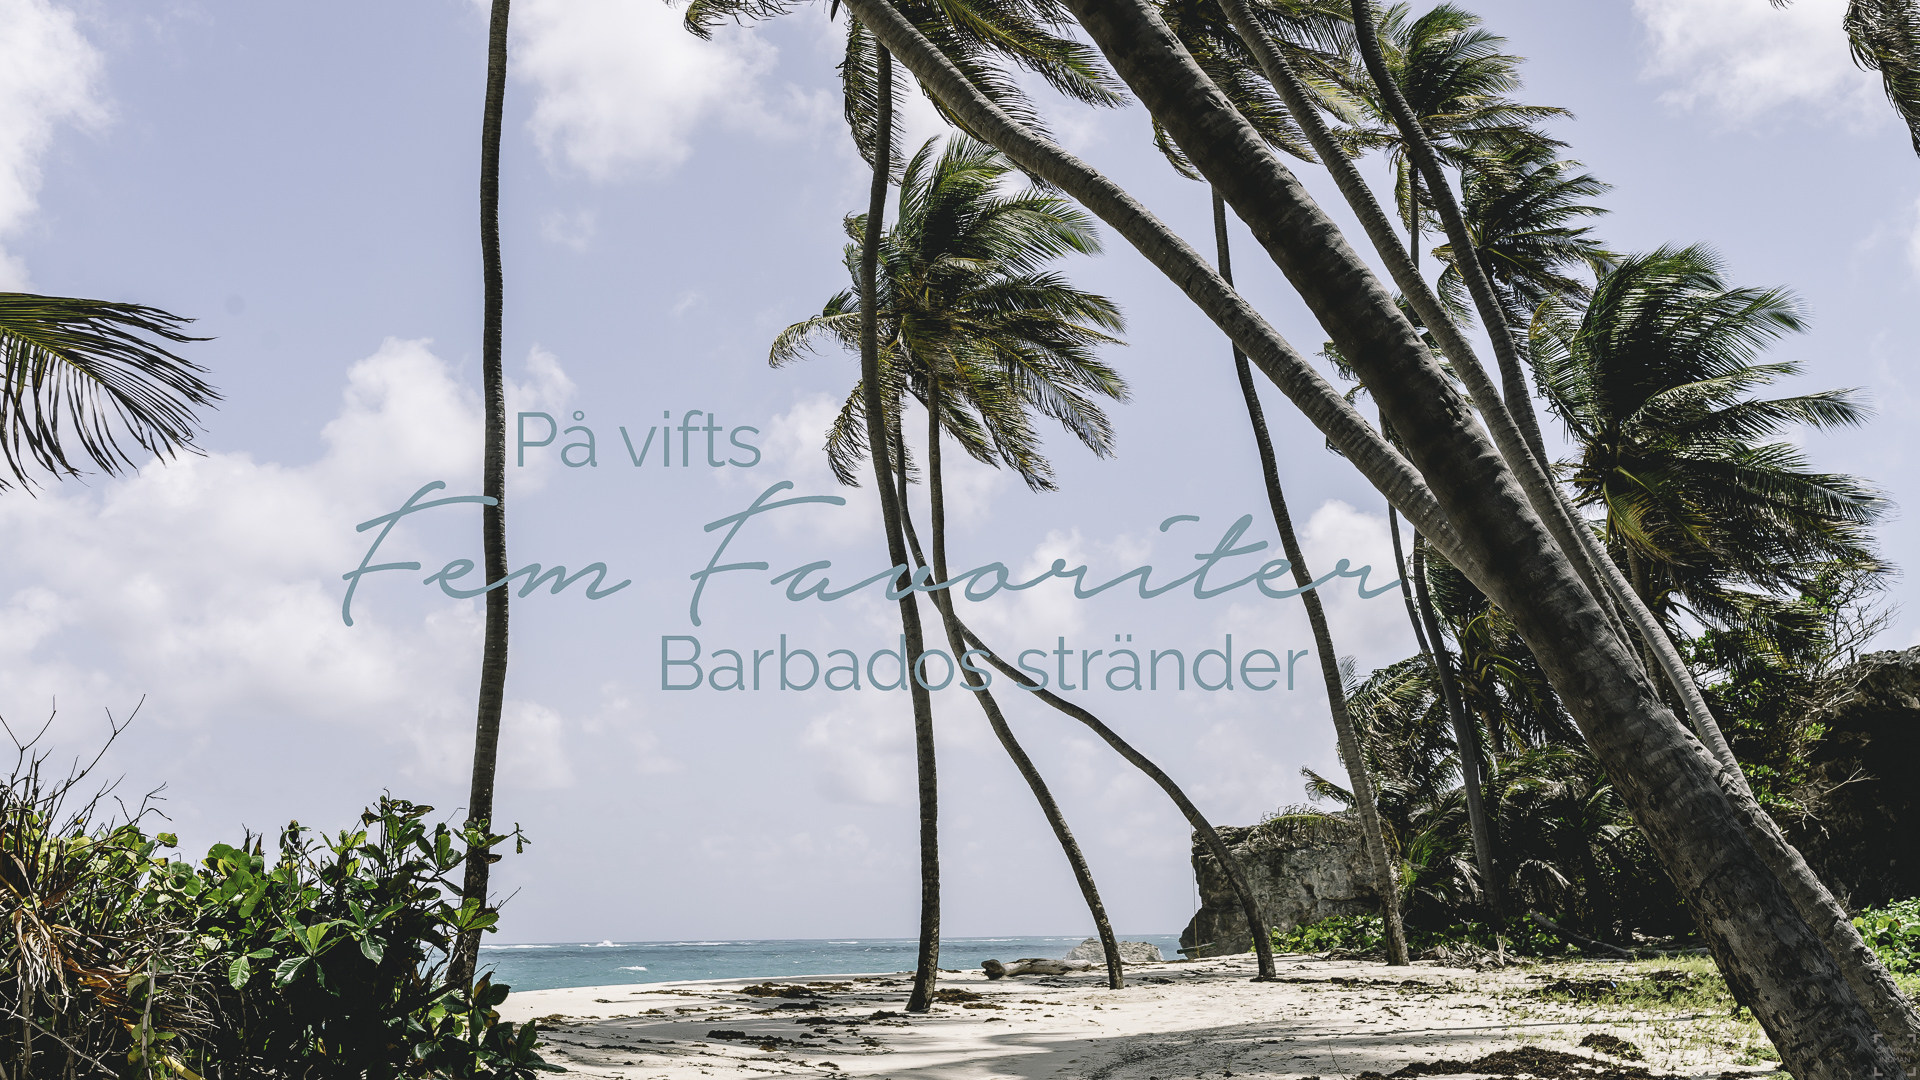 Fem favoriter – Barbados stränder